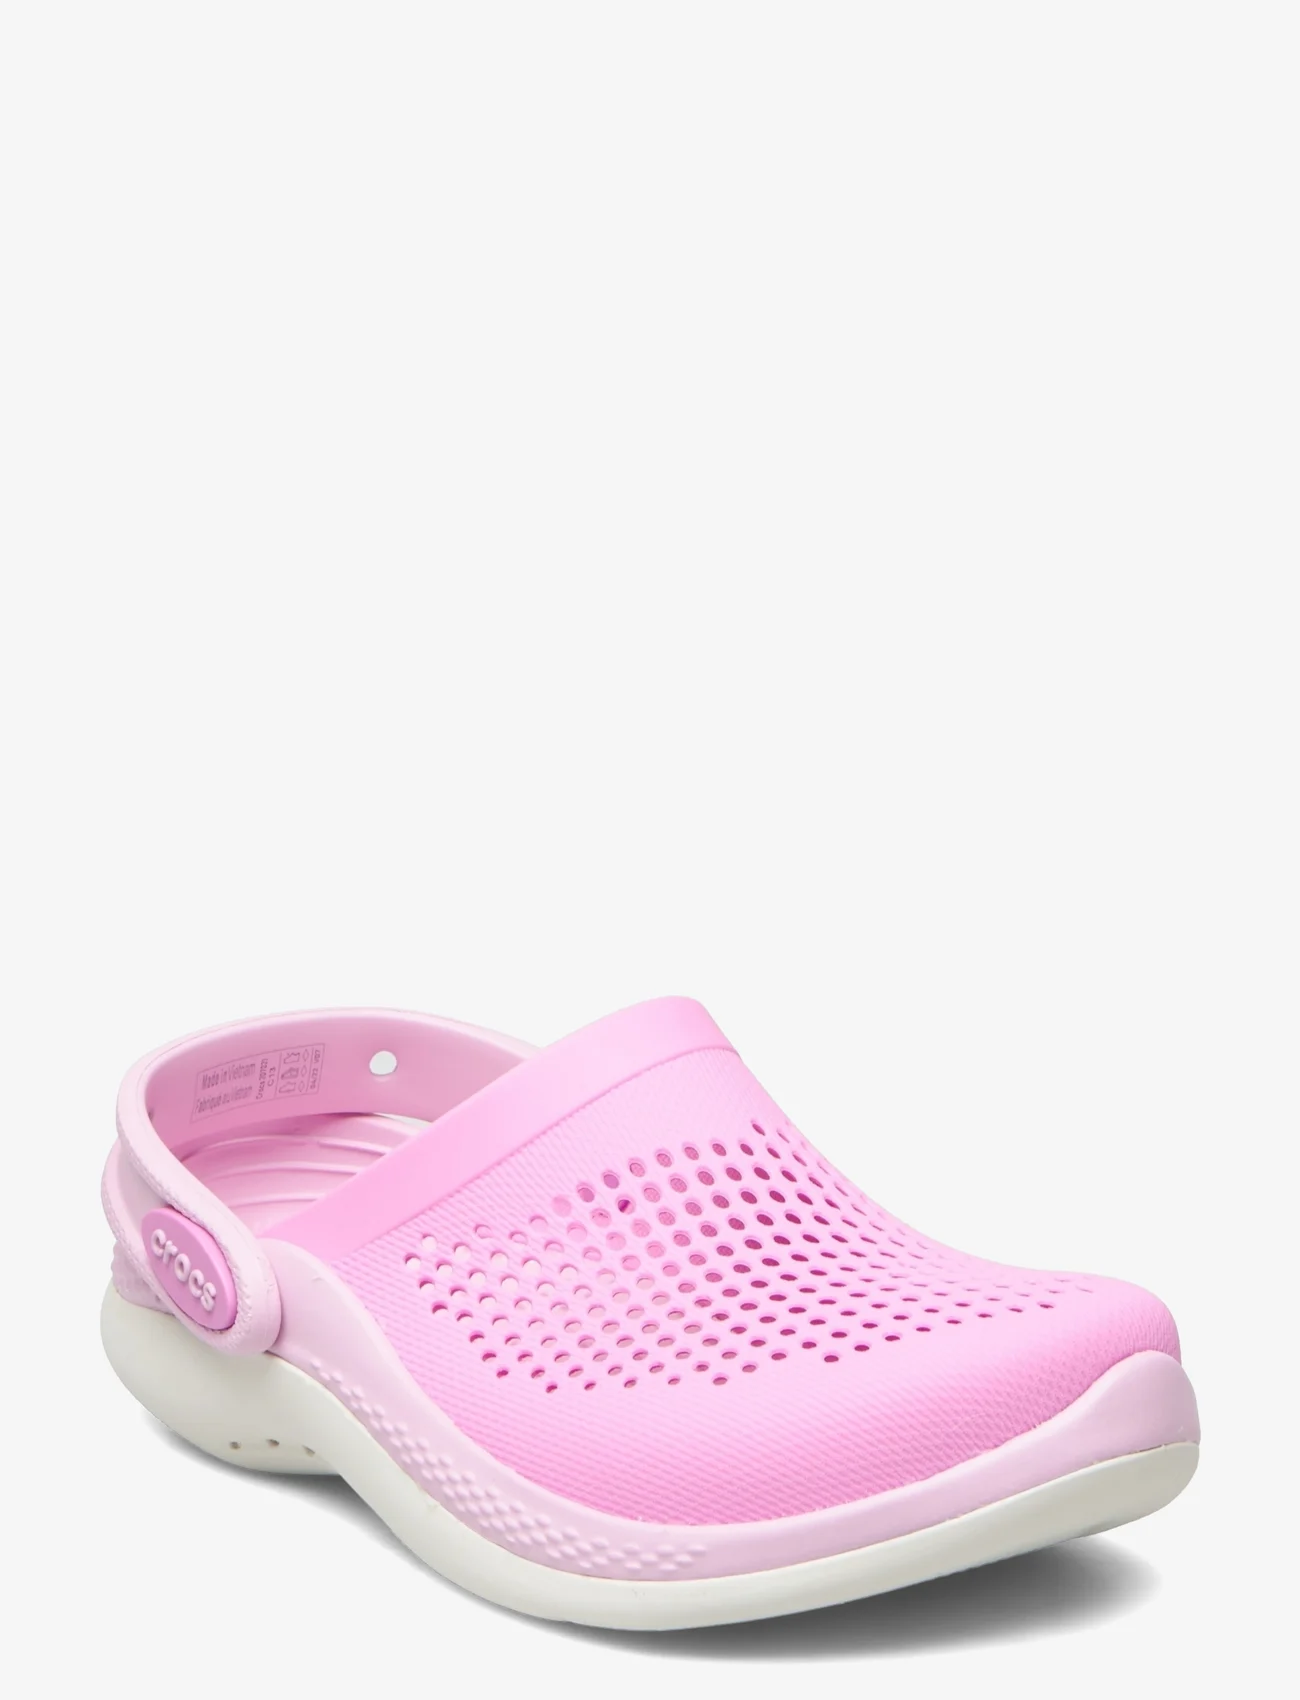 Crocs - LiteRide 360 Clog K - suvised sooduspakkumised - taffy pink/ballerina pink - 0